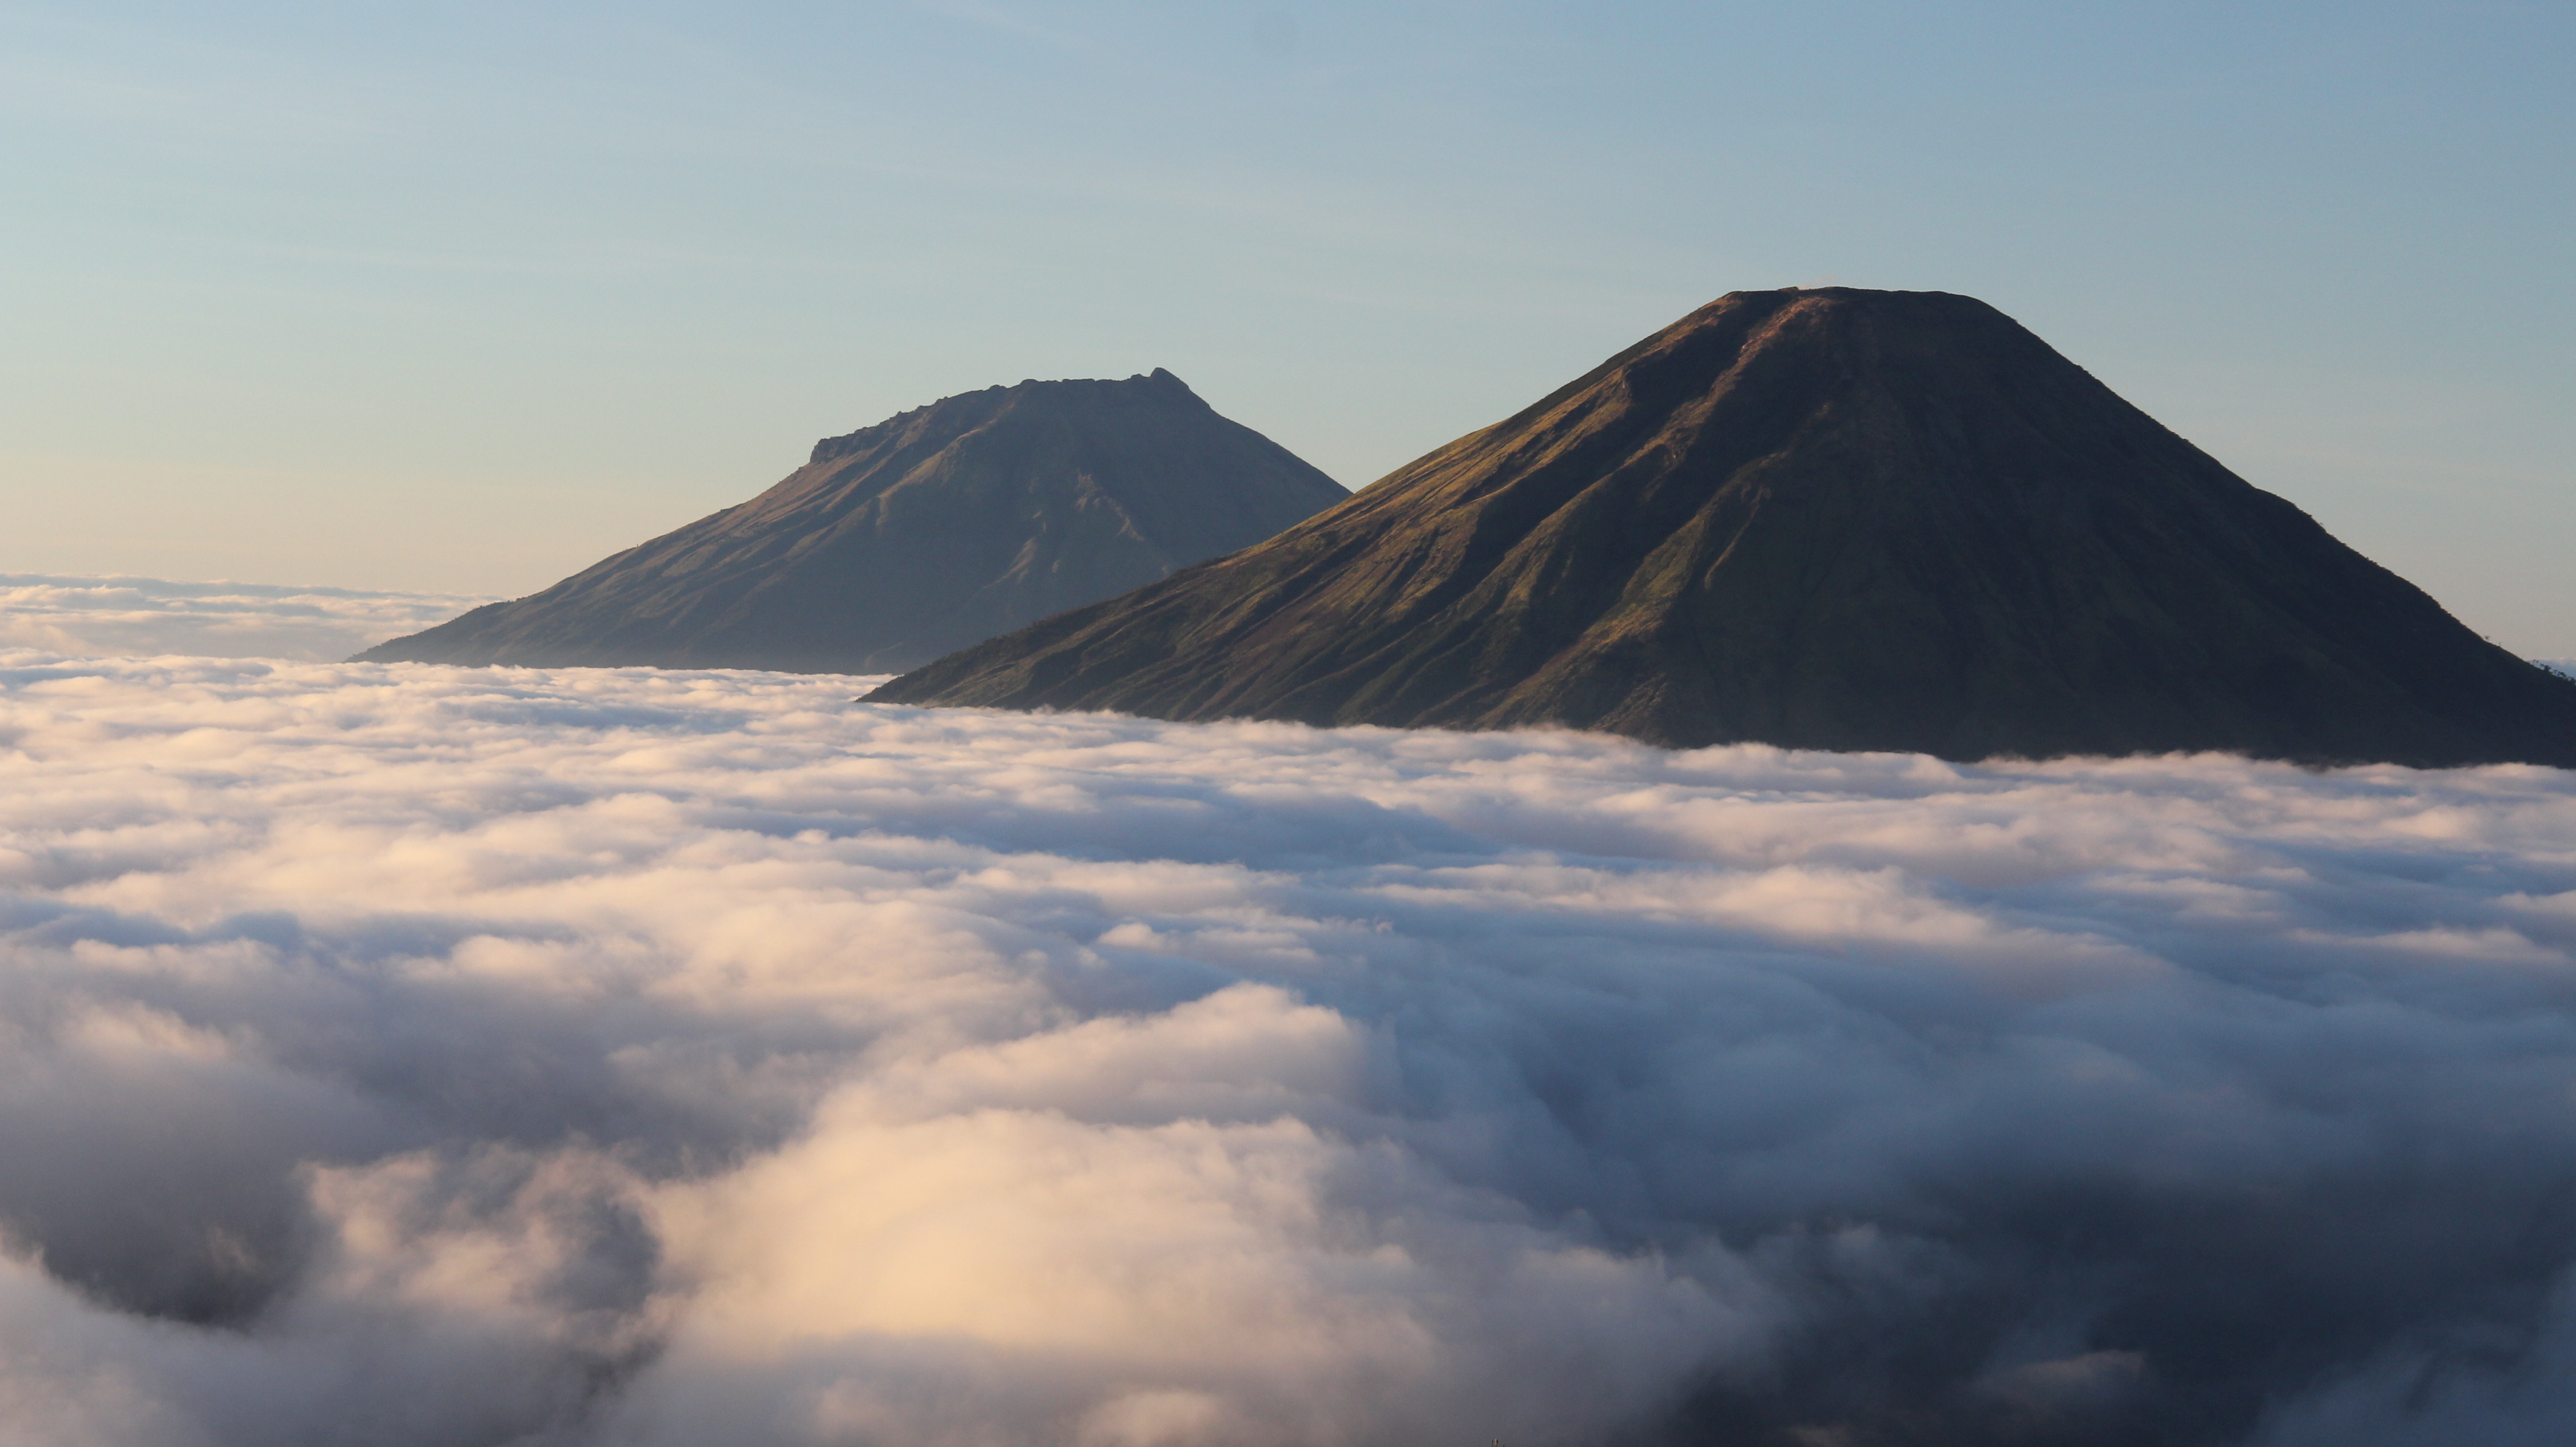 Gunung Prau Dieng Jelajah Terletak Ketinggian 2560 Atas Permukaan Laut